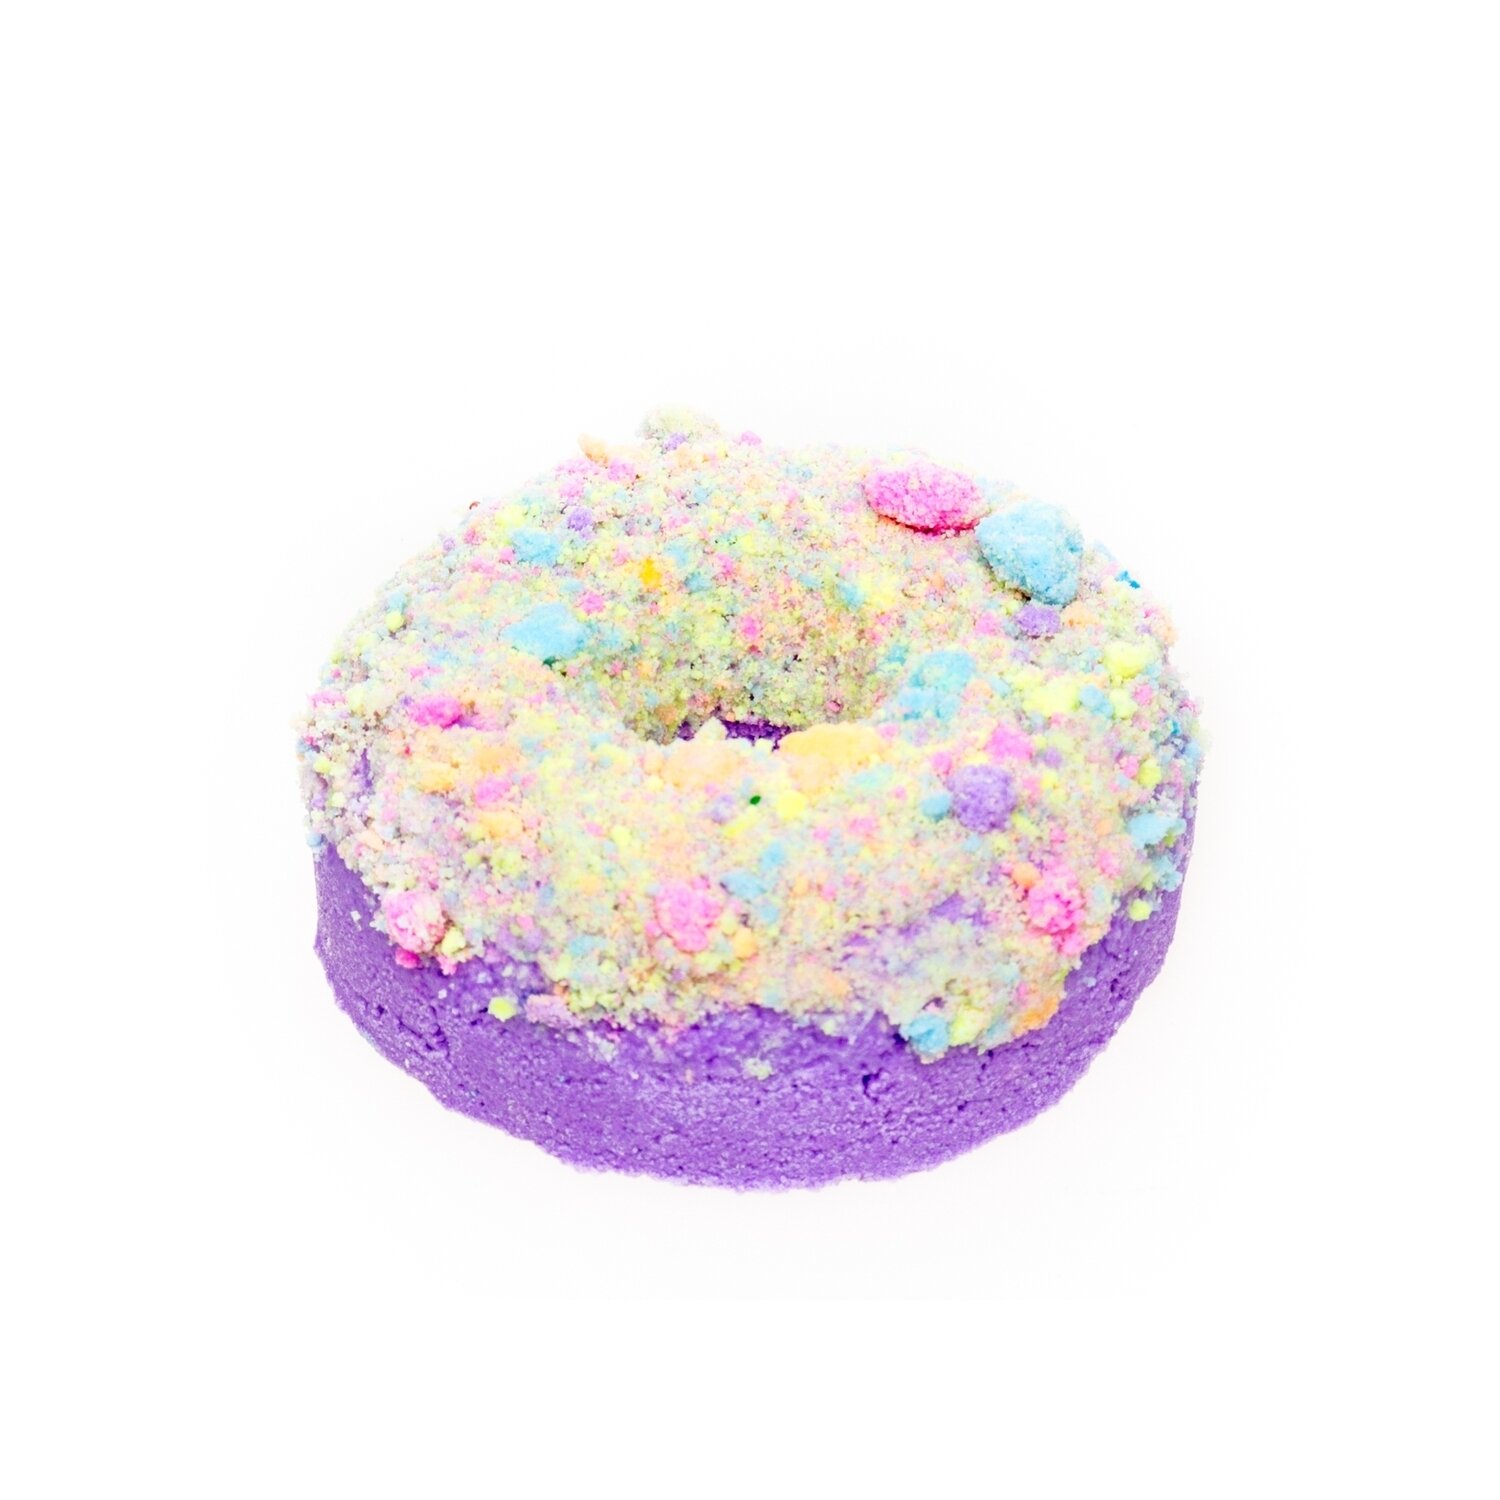 Fizzy Pop Donut Bath Bomb